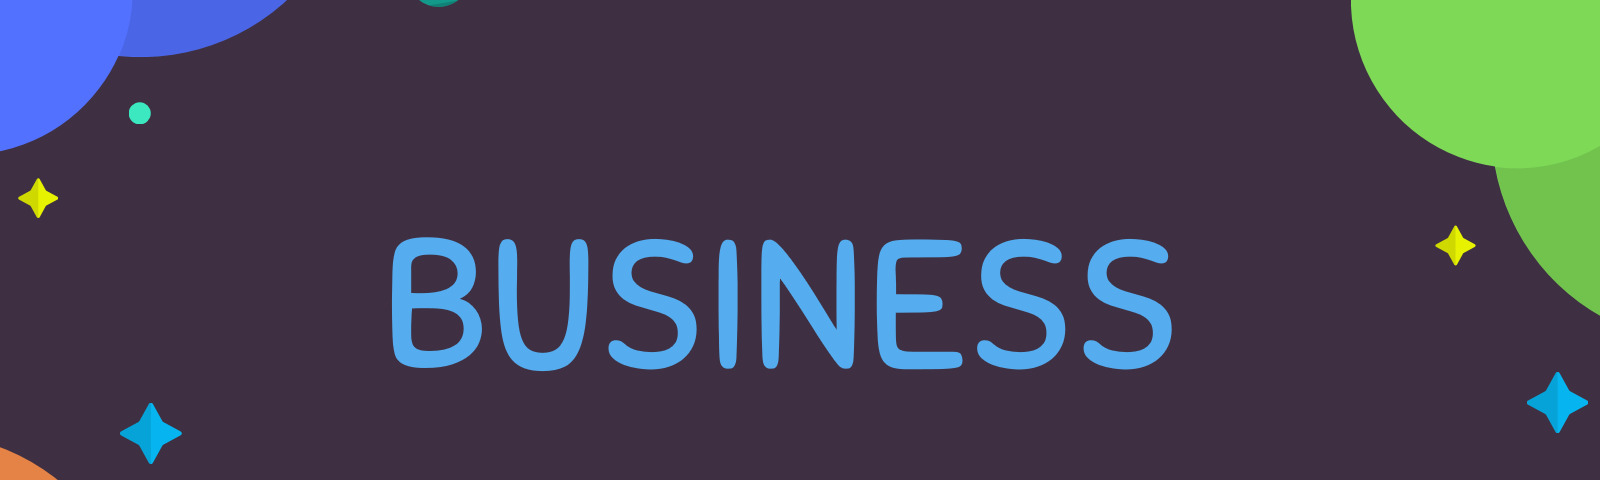 medium business writing, medium business, medium articles business, medium startup, medium publication business, medium